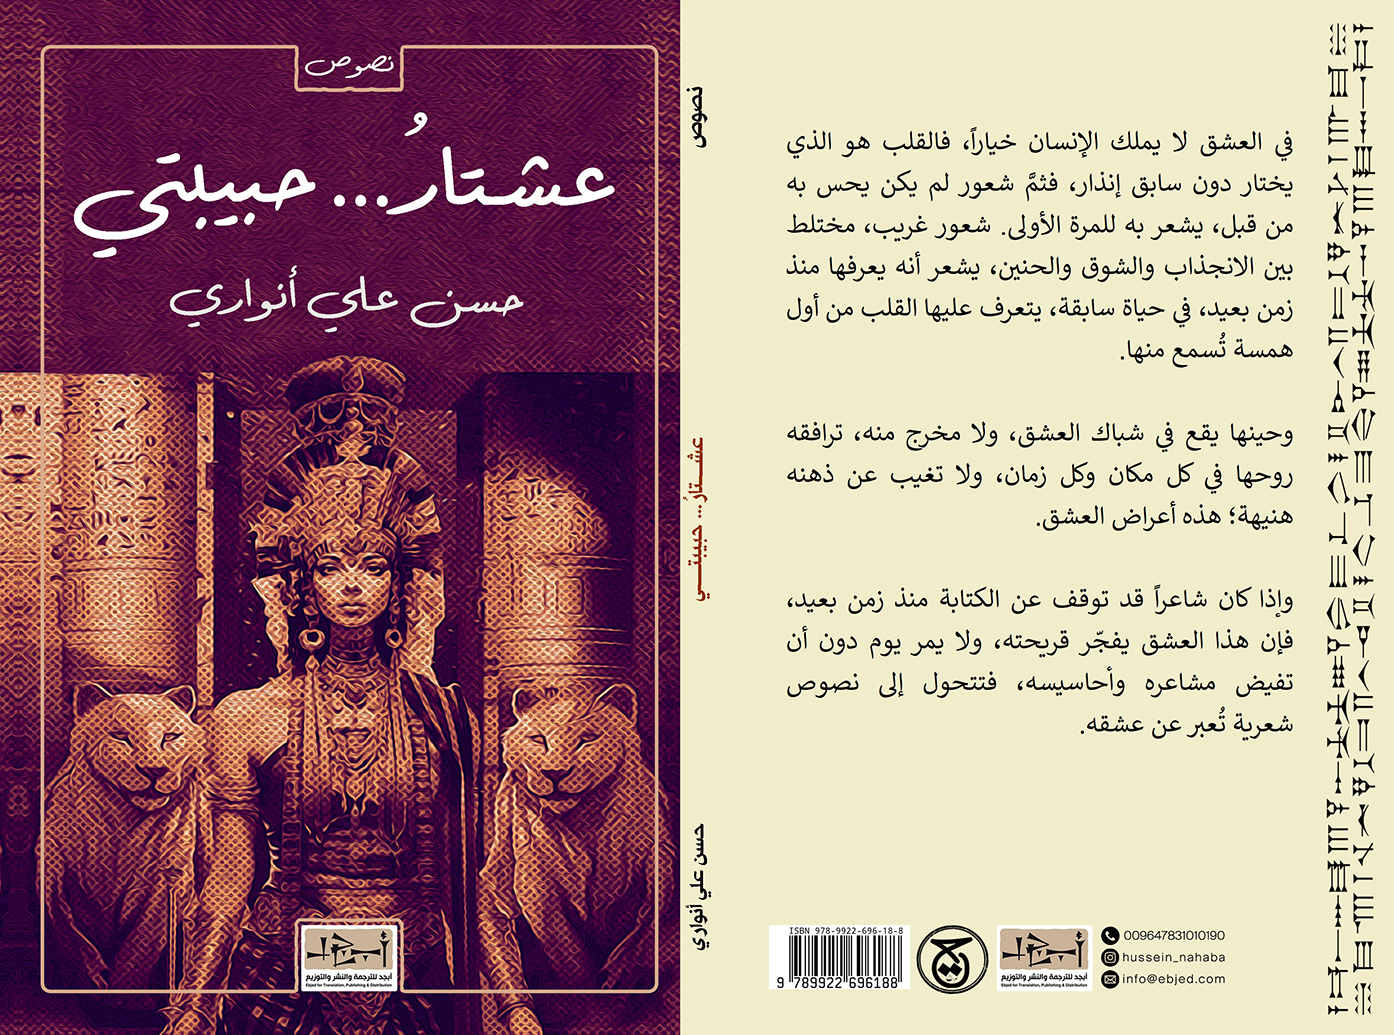 عنوان الكتاب: عشتار حبيبتي  تأليف: حسن علي أنواري التصنيف: نصوص